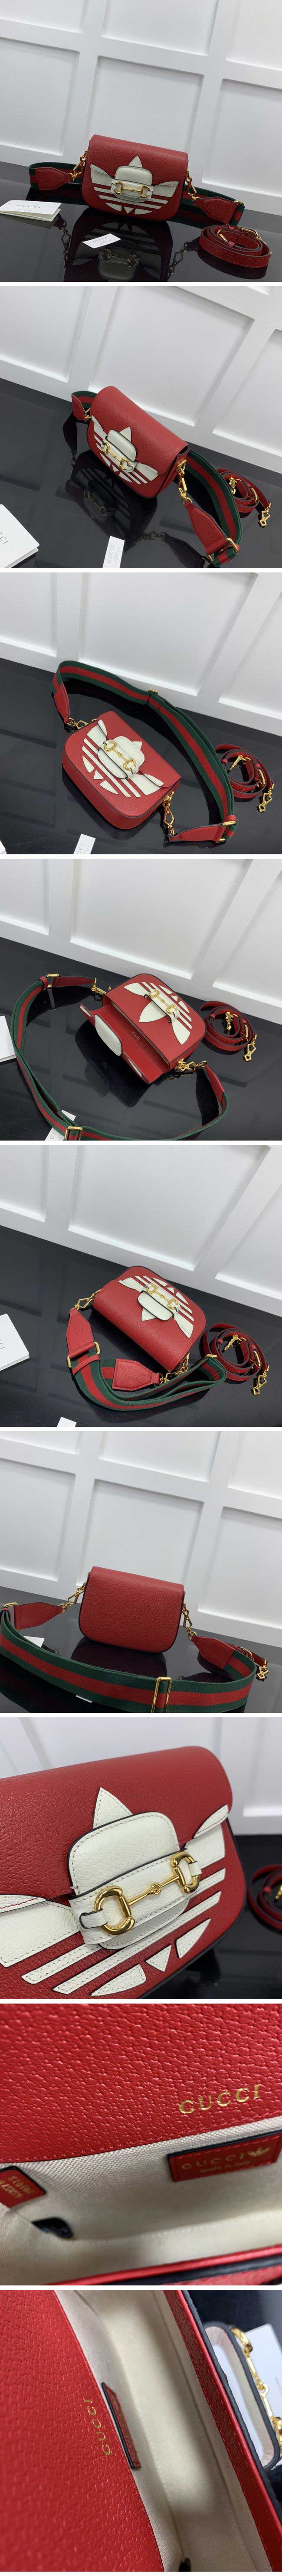 Gucci x Adidas Horsebit 1955 Mini Bag Red グッチ x アディダス ホースビット 1955 ミニバッグ レッド【N級】